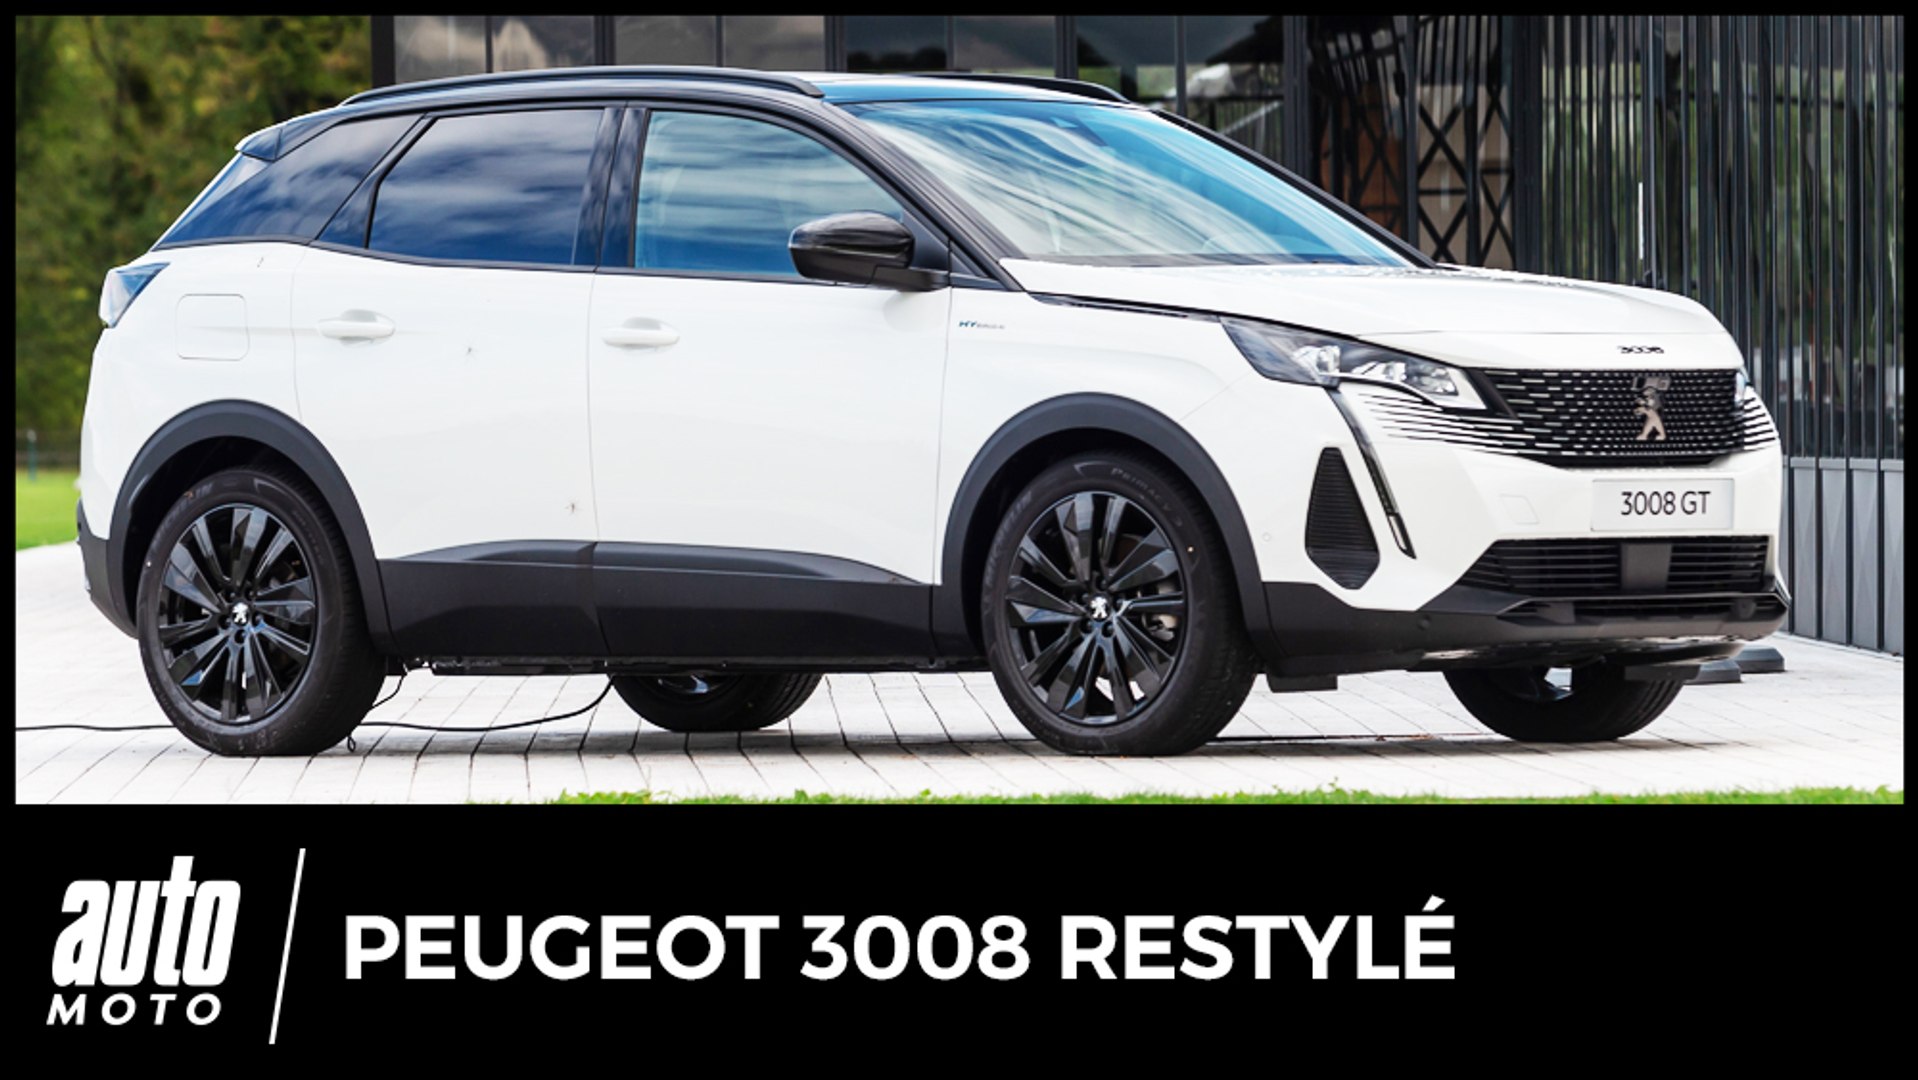 Essai nouveau Peugeot 3008 (2020) : belle calandre - Vidéo Dailymotion